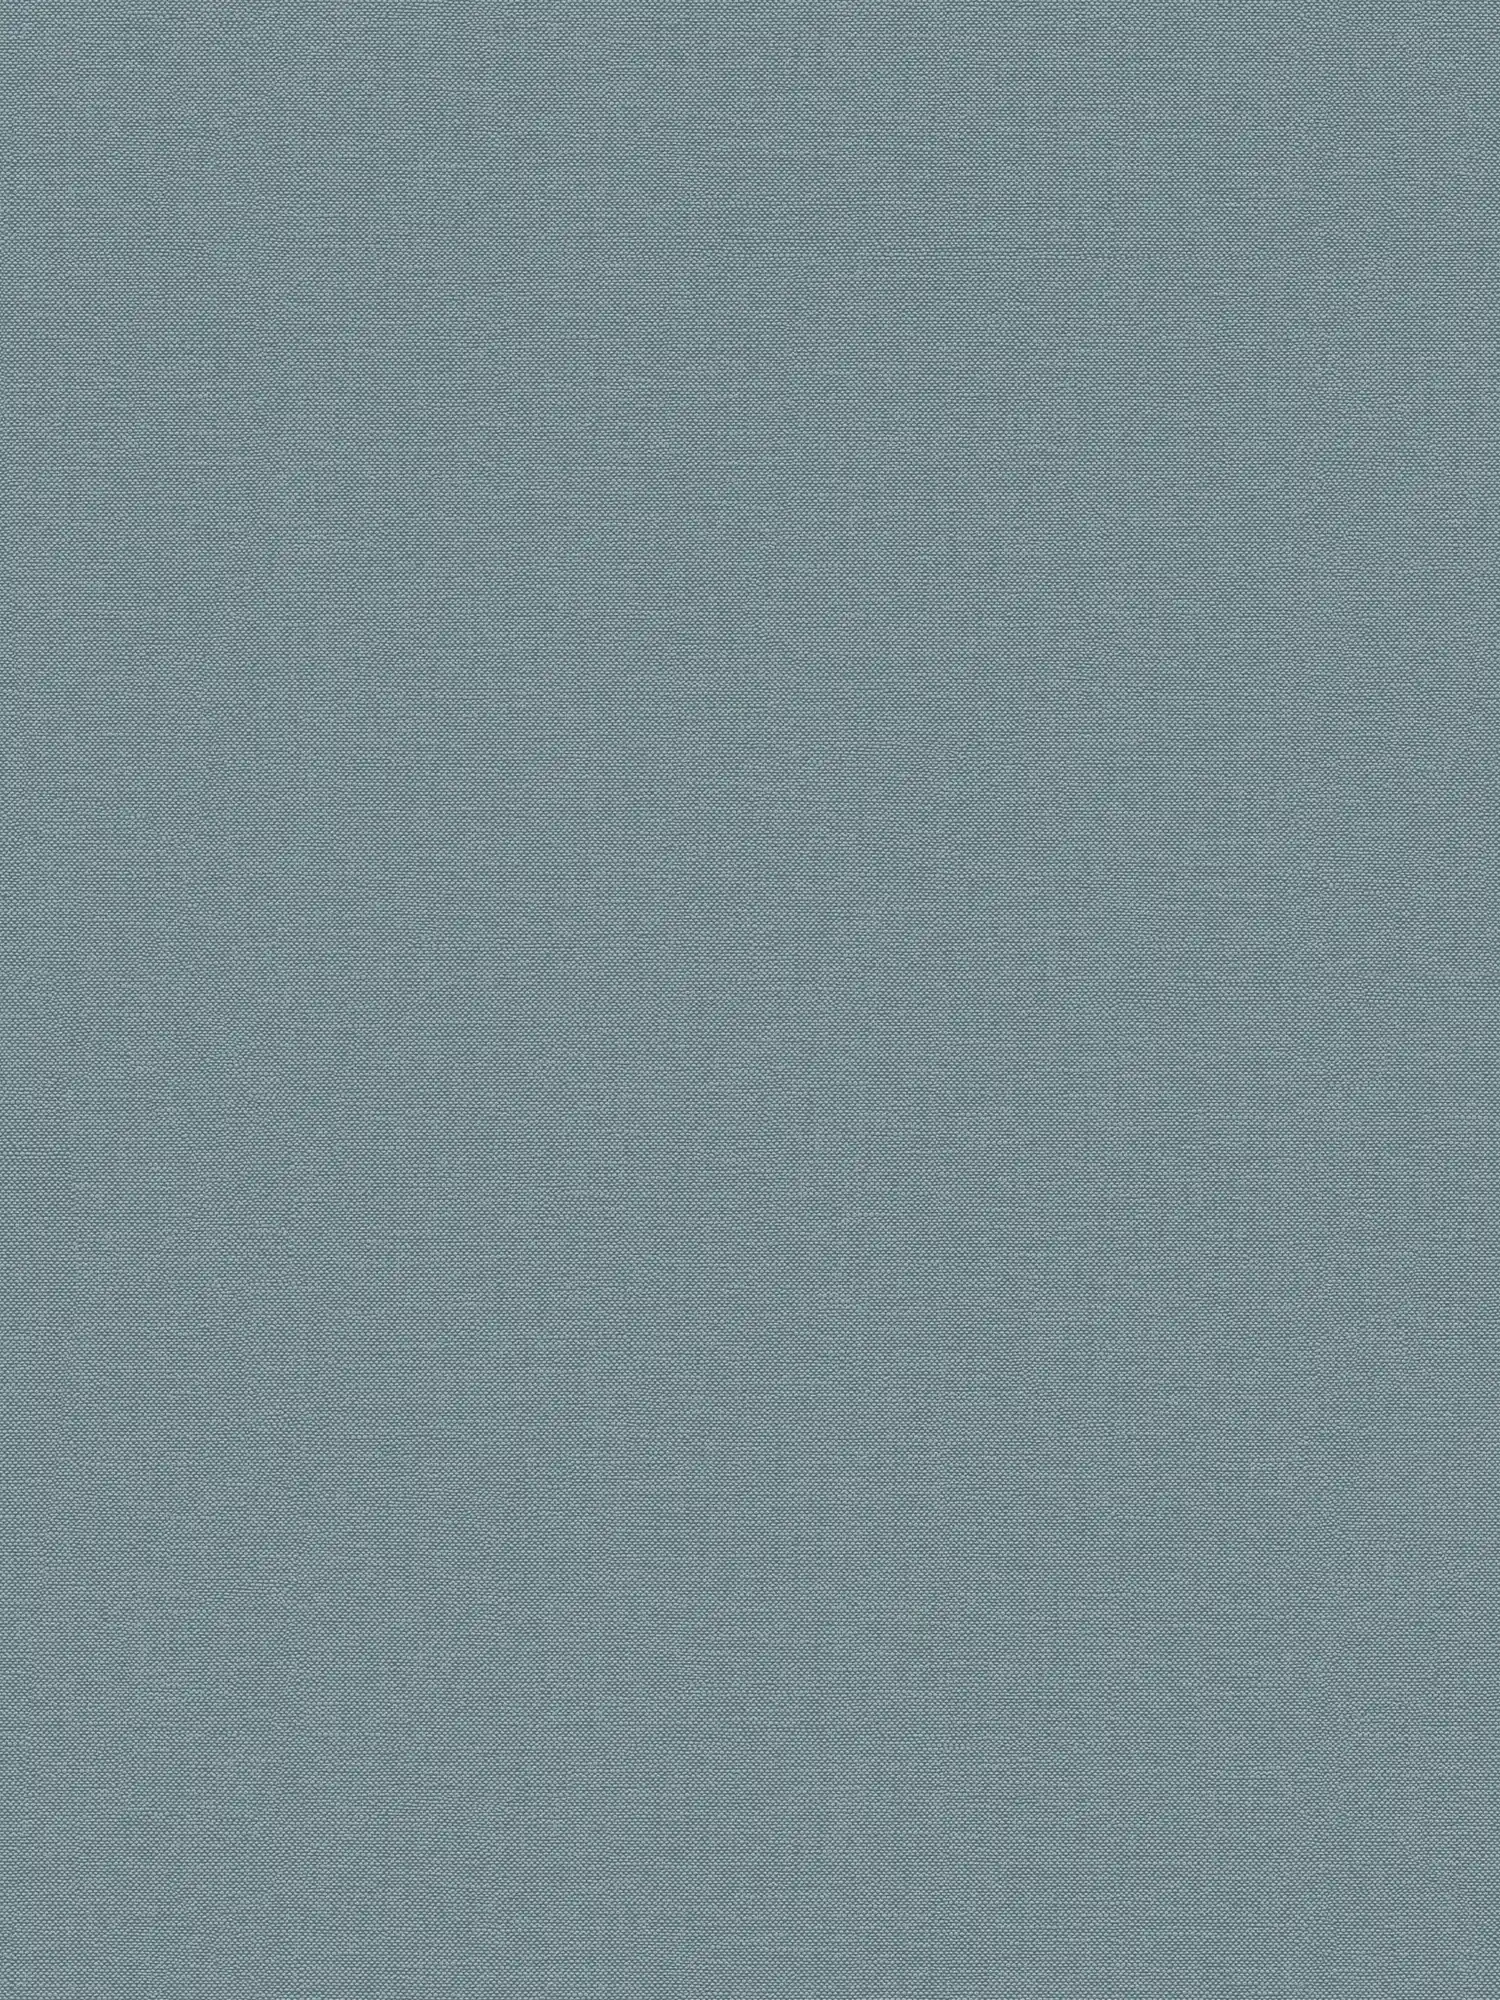 Plain wallpaper with fabric structure matt - blue
